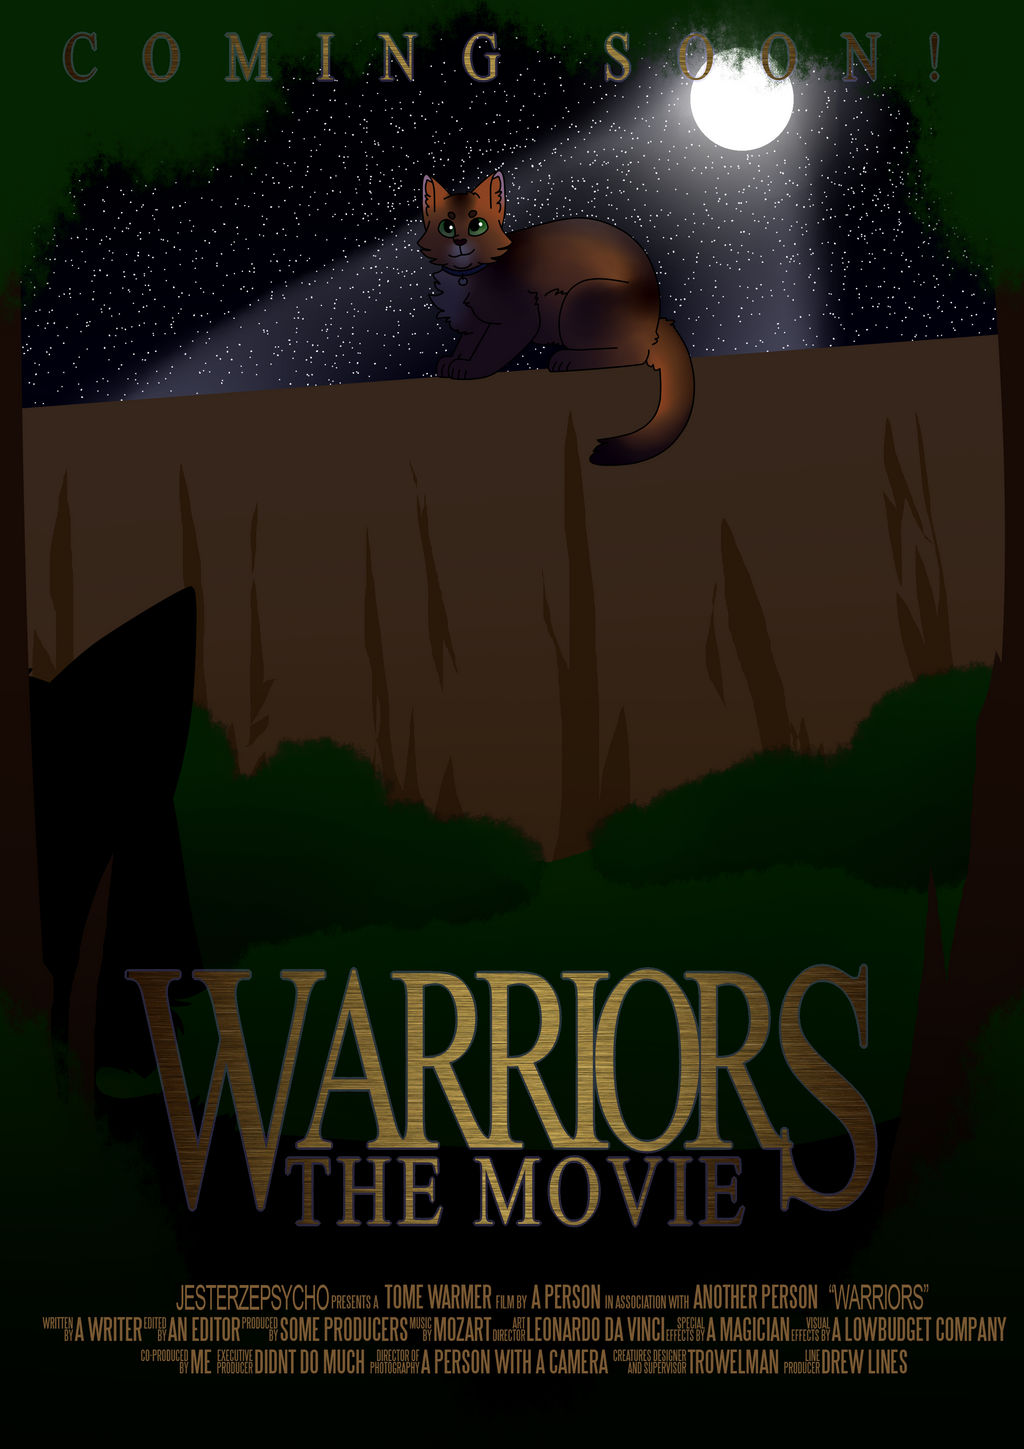 Movie Warrior Cats